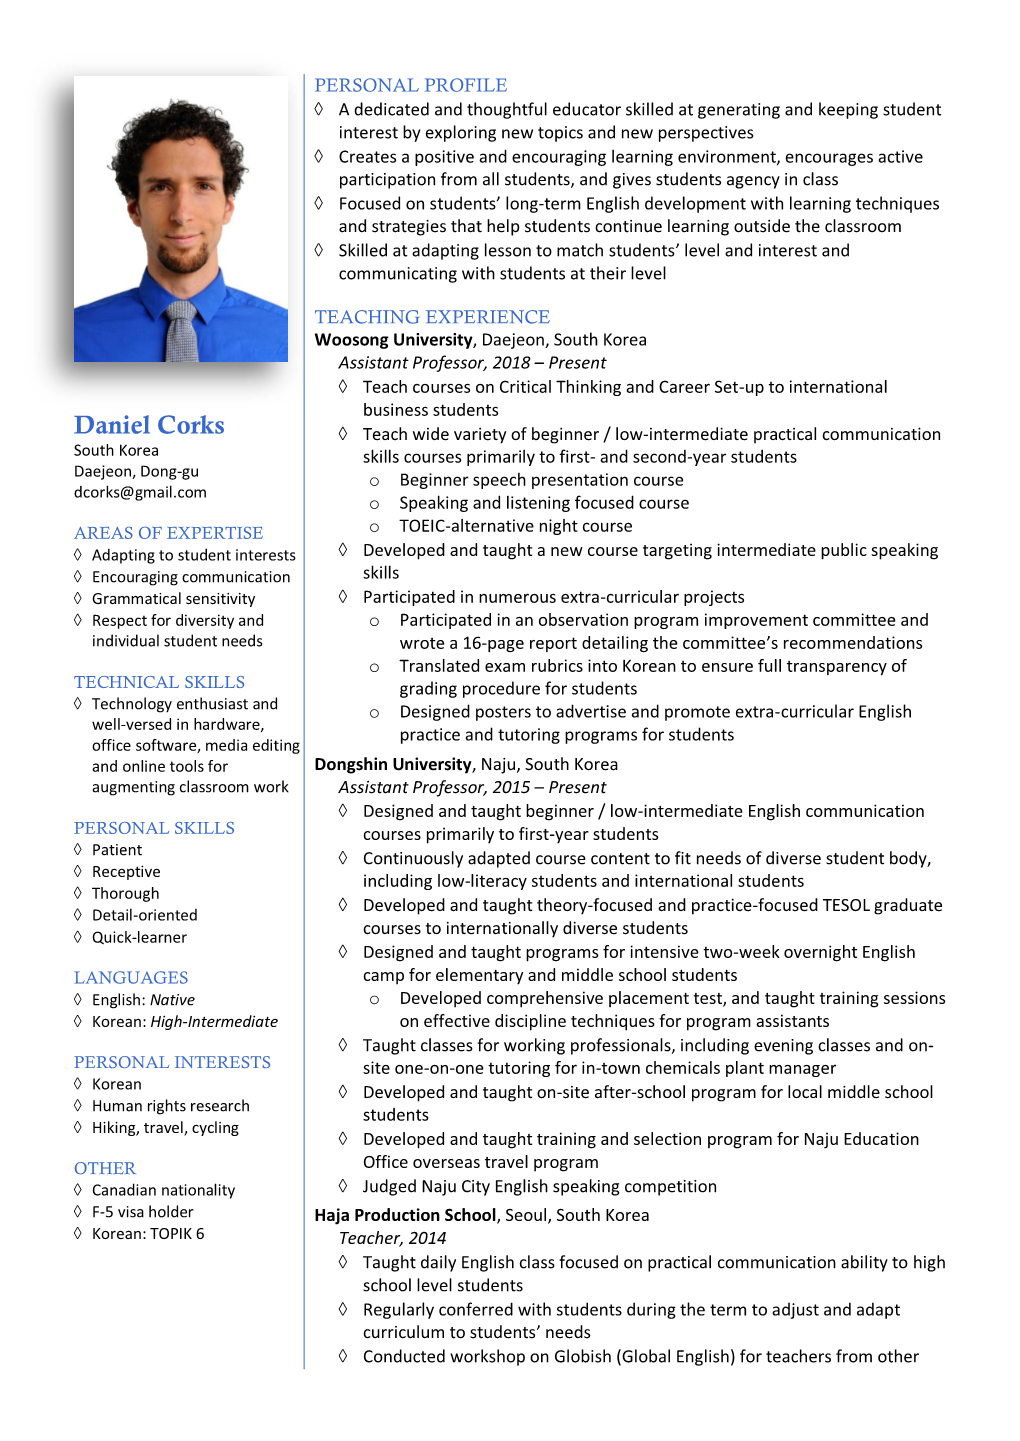 Resume(Daniel Corks).Pdf